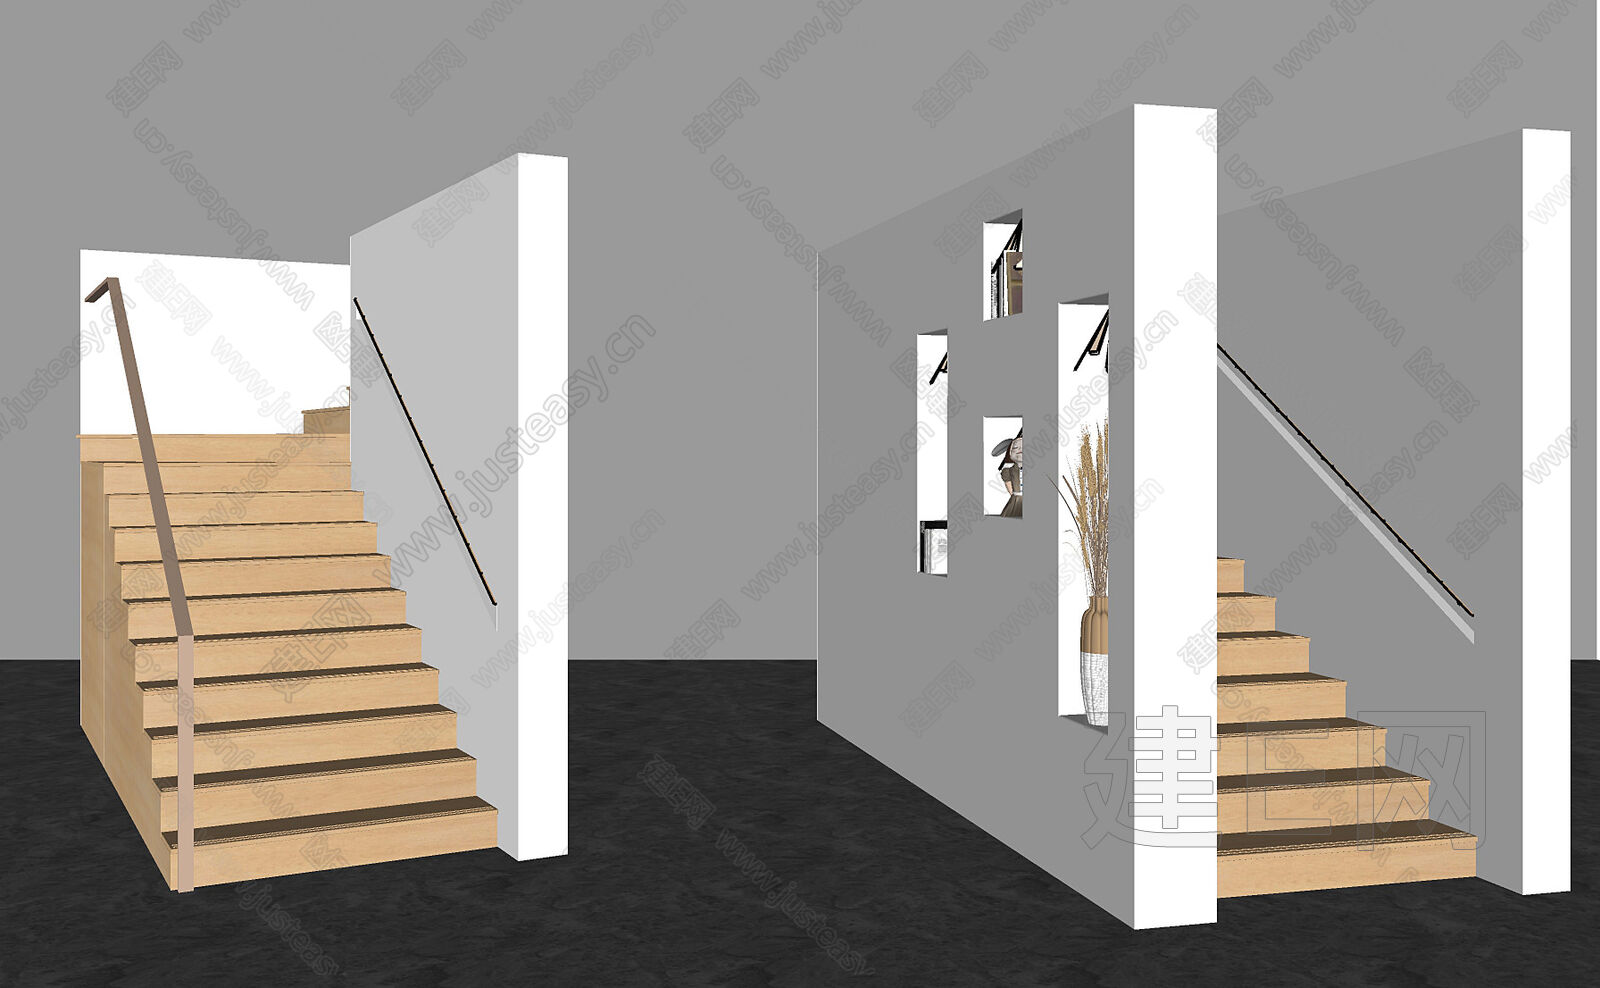 【美式楼梯3d模型】建E网_美式楼梯3d模型下载[ID:113855258]_打造3d美式楼梯模型免费下载平台